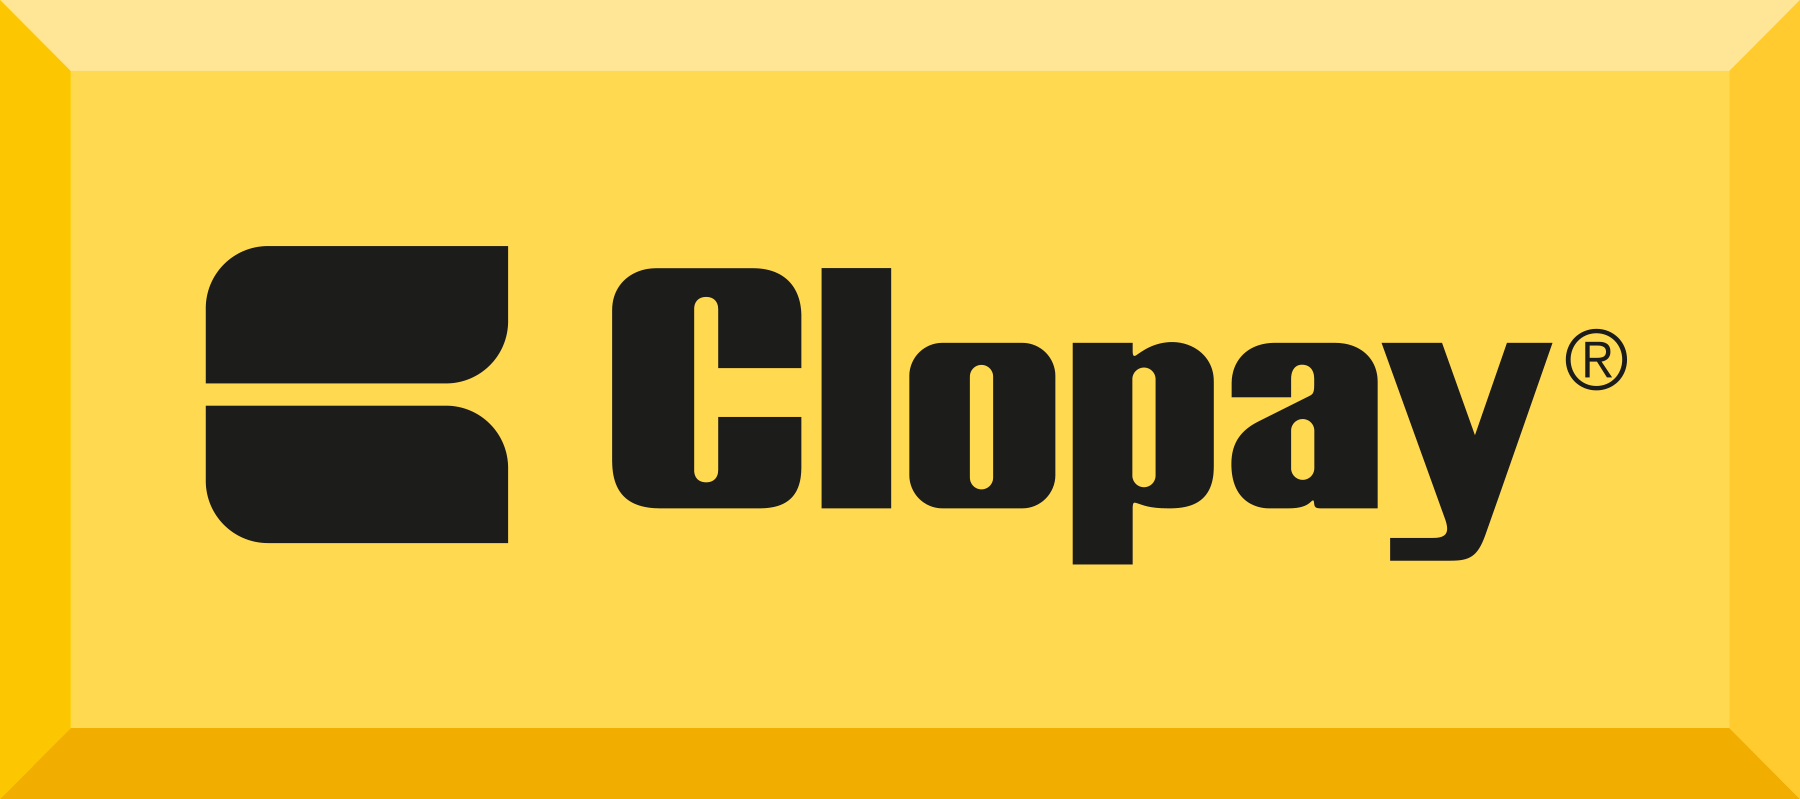 Clopay-GoldBar_RGB